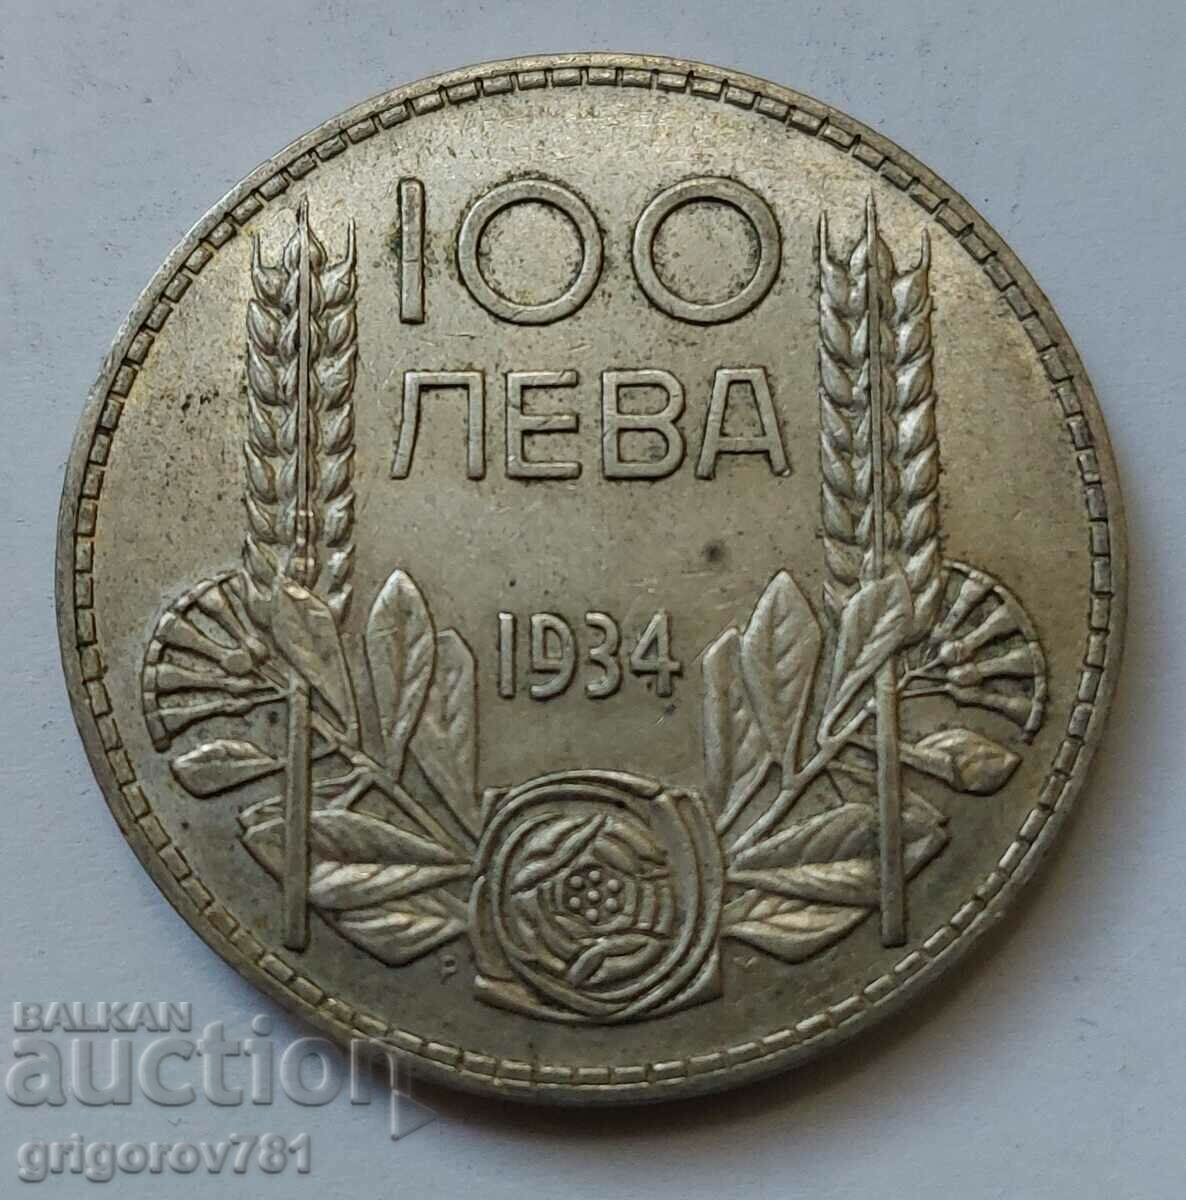 100 leva argint Bulgaria 1934 - monedă de argint #101